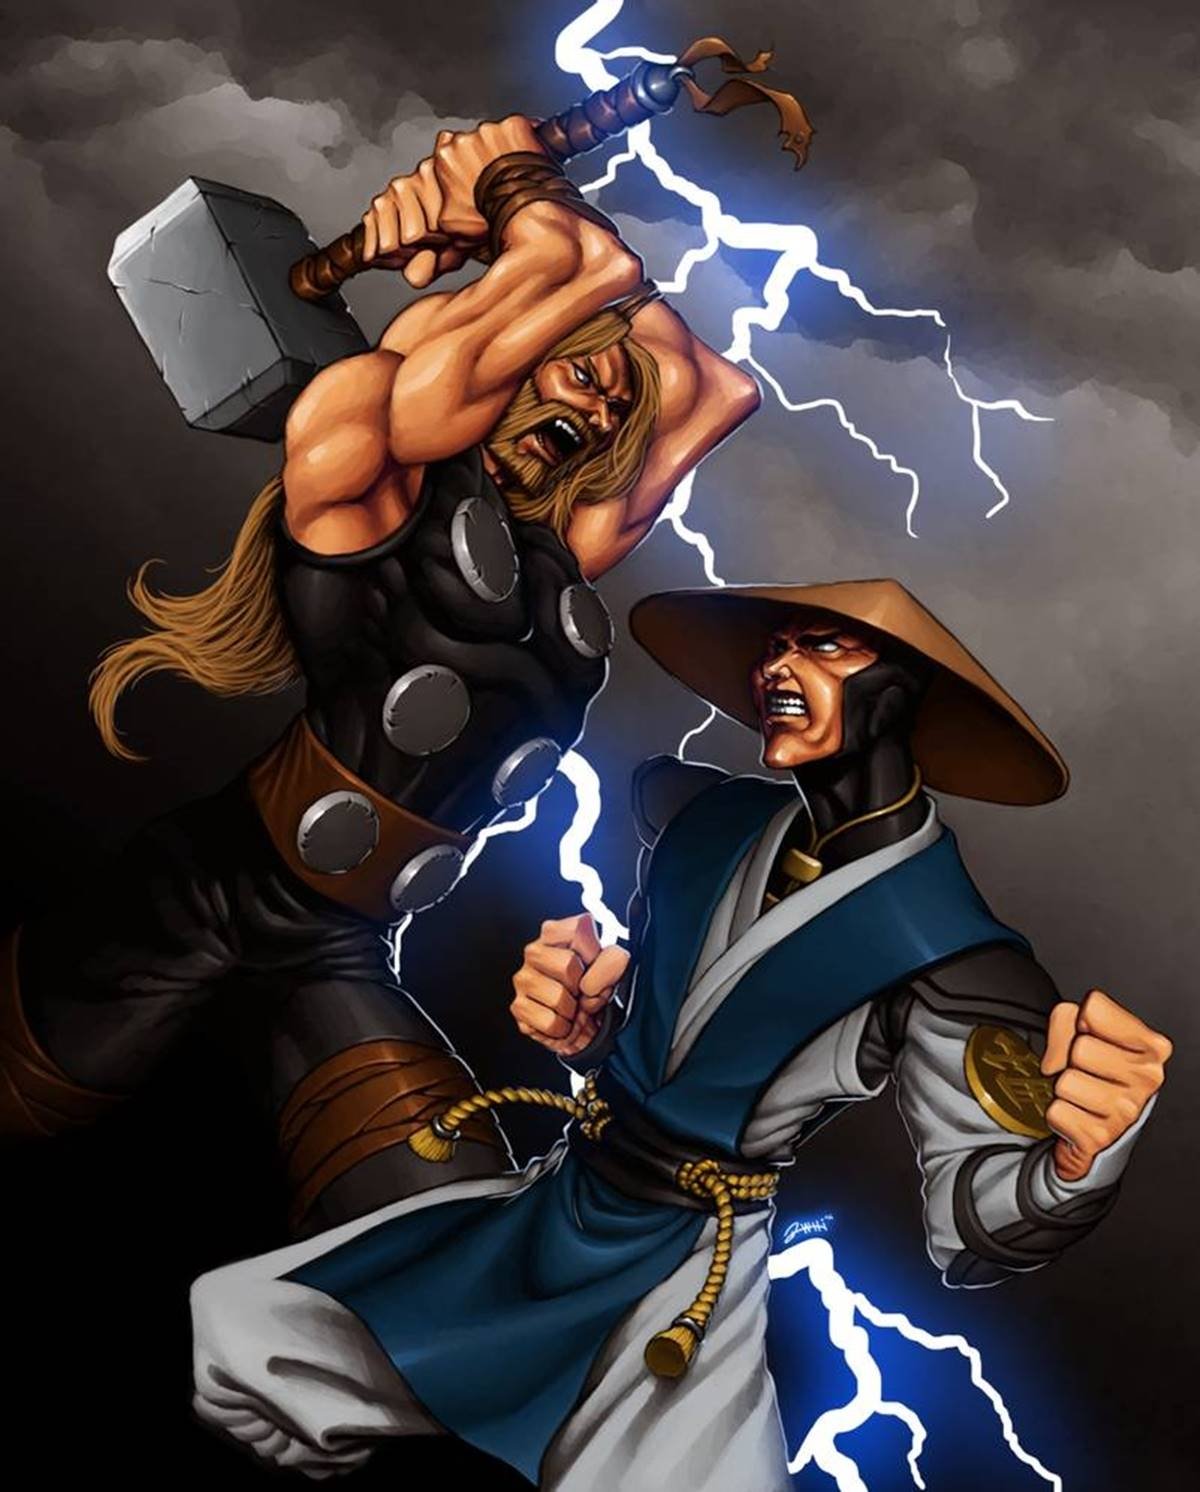 Thor de Marvel vs Raiden de Mortal Kombat: ¿quién ganaría?